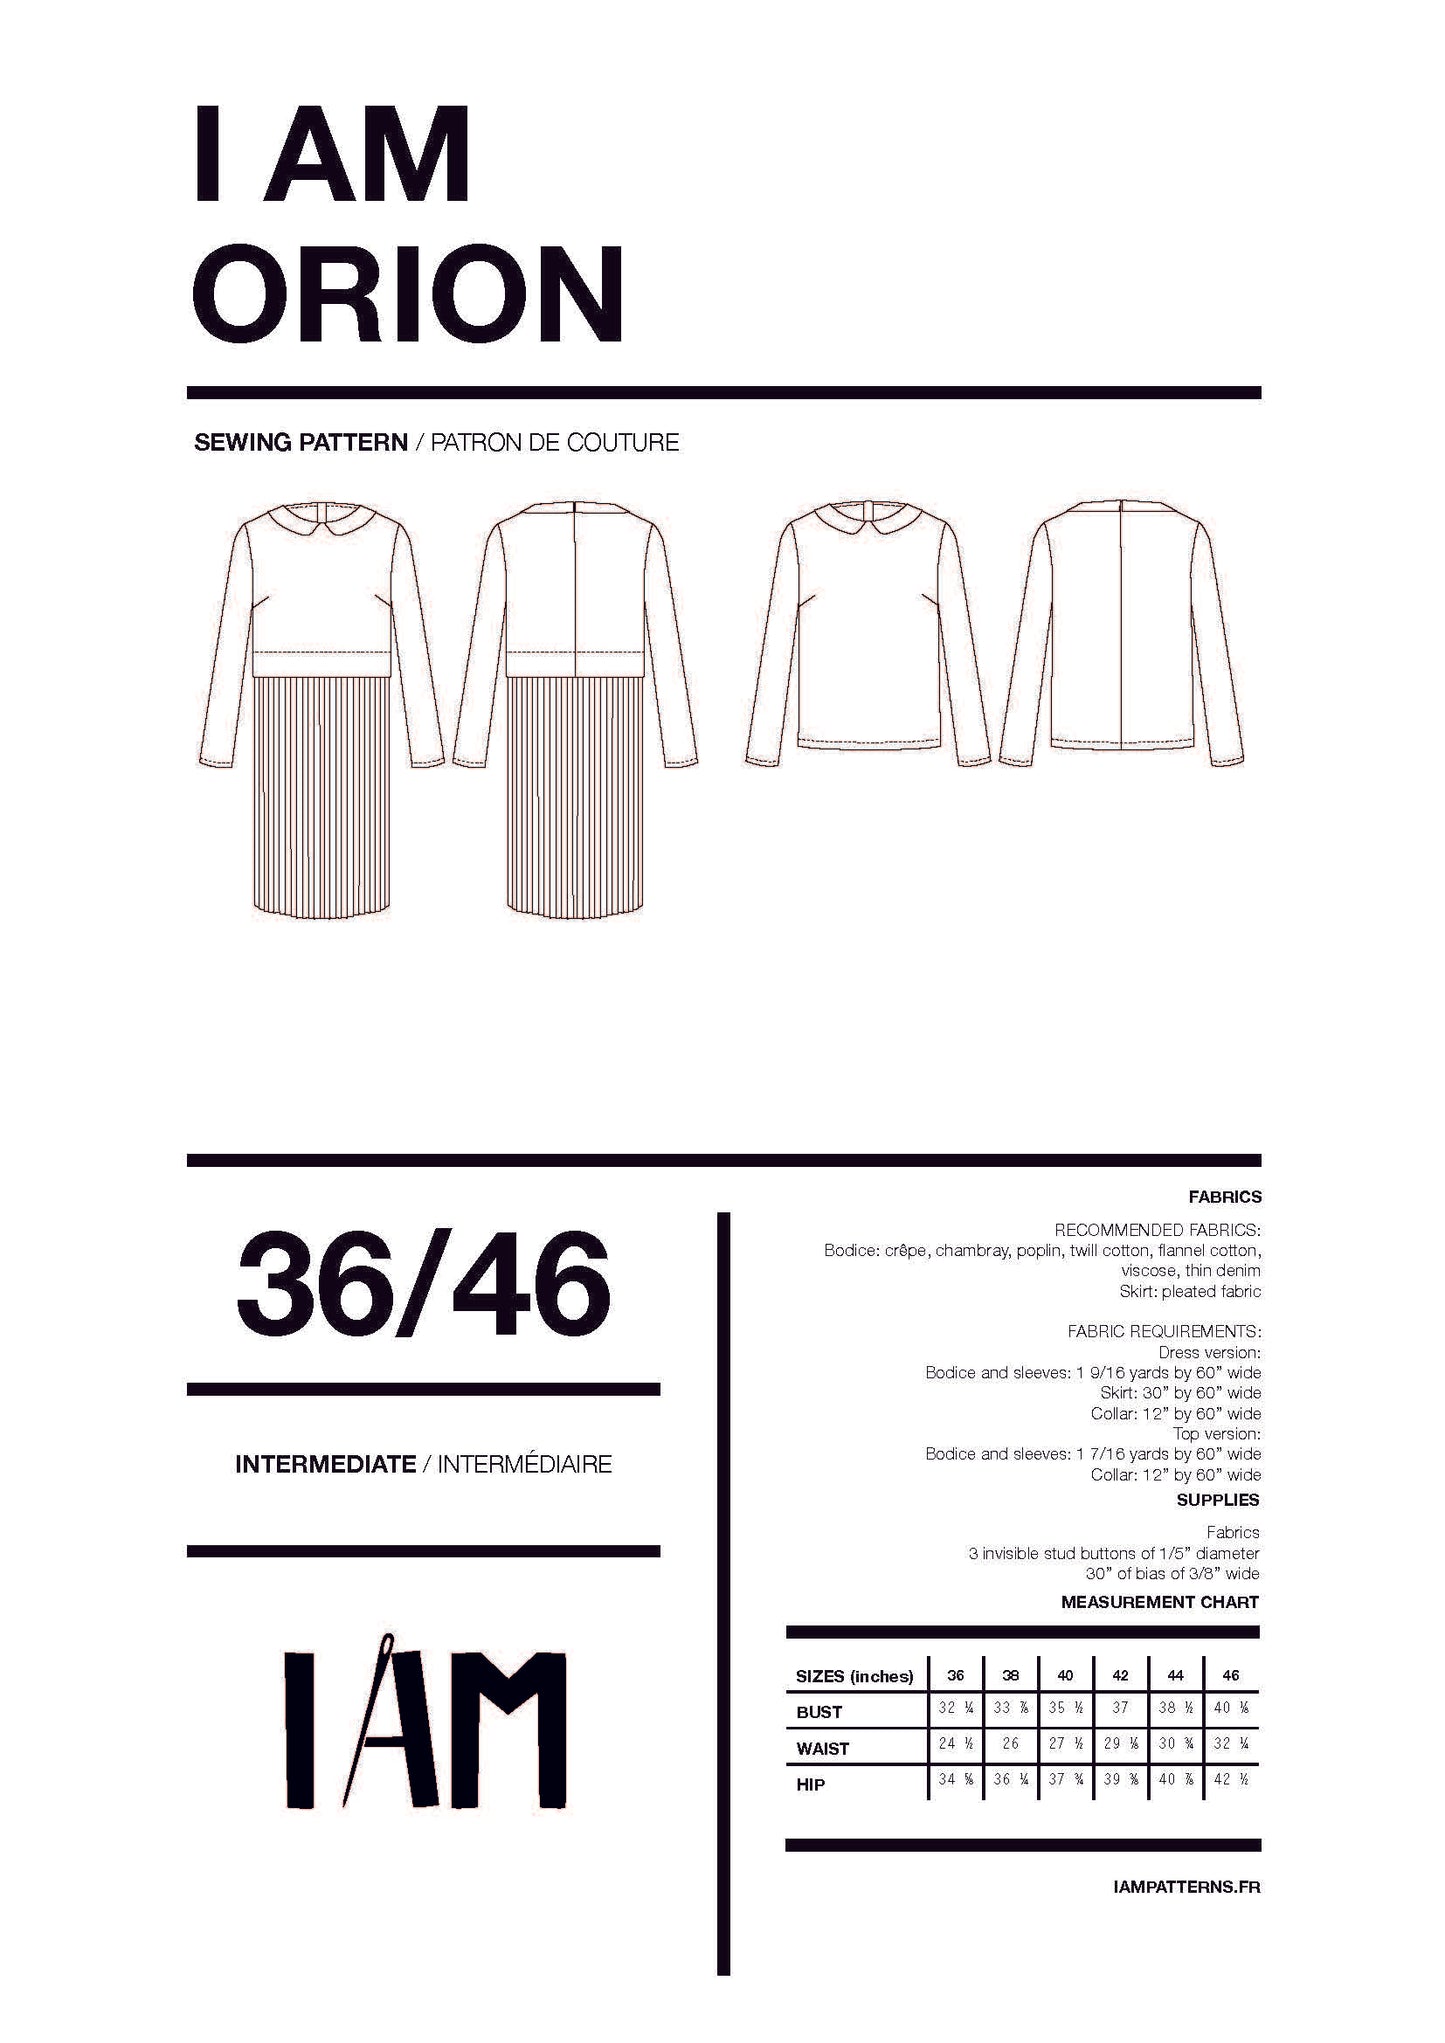 I AM Orion